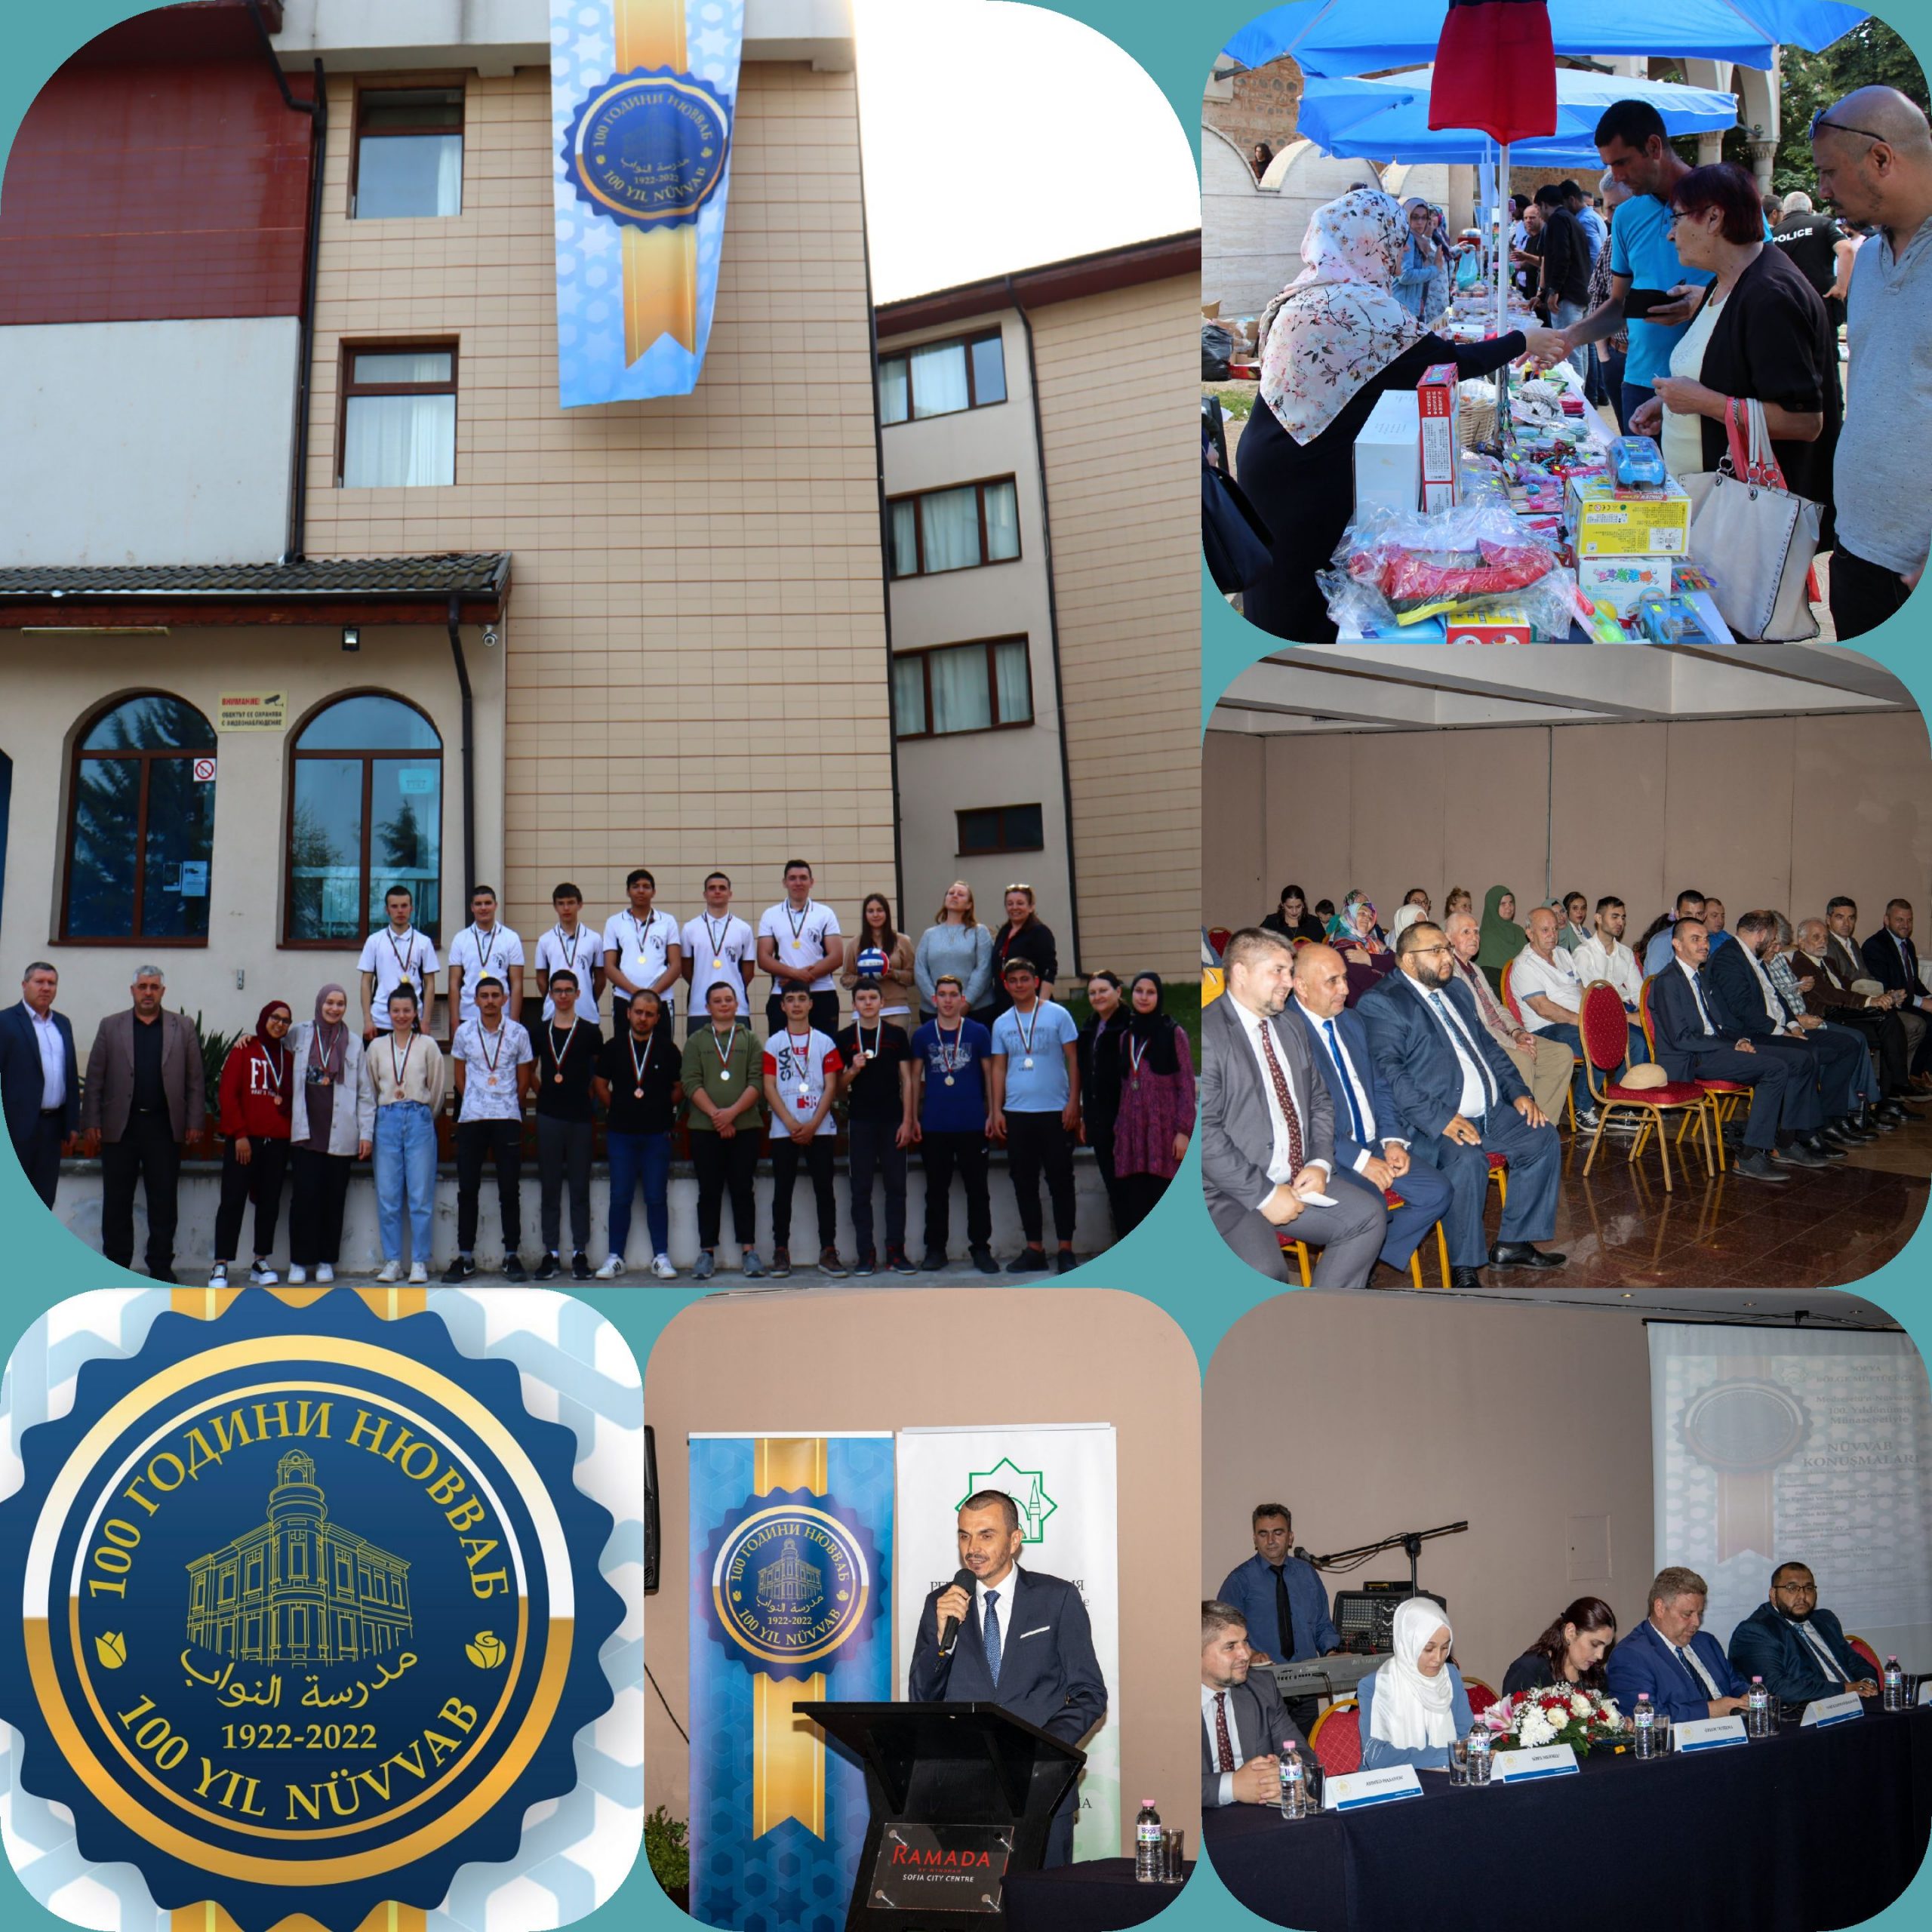 أطلقت دار الافتاء العامة في بلغاريا سلسلة من الاحتفالات الدينية والتعليمية والثقافية والخيرية بمناسبة مئوية "مدرسة النواب" في جنوب البلاد (1922-2022)